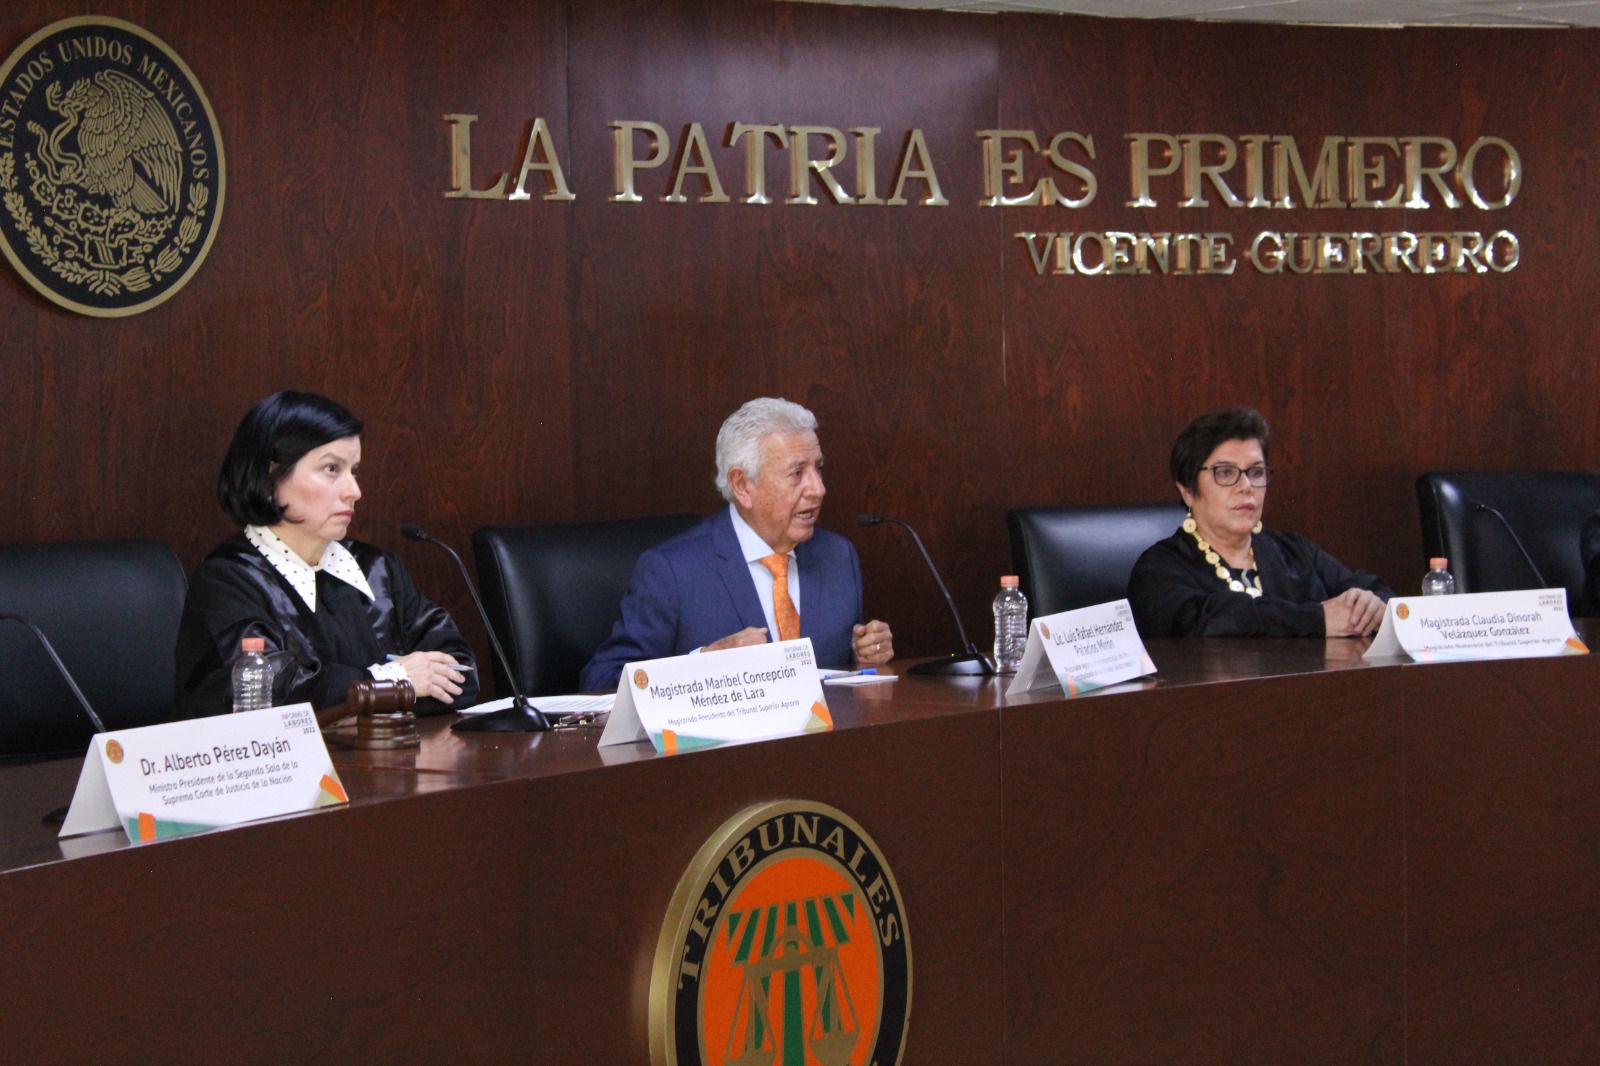 •	En su mensaje, el Procurador Luis Hernández Palacios reconoció la autonomía, esfuerzo y contribución de los Tribunales Agrarios para preservar la paz social y la equidad en el campo de México.